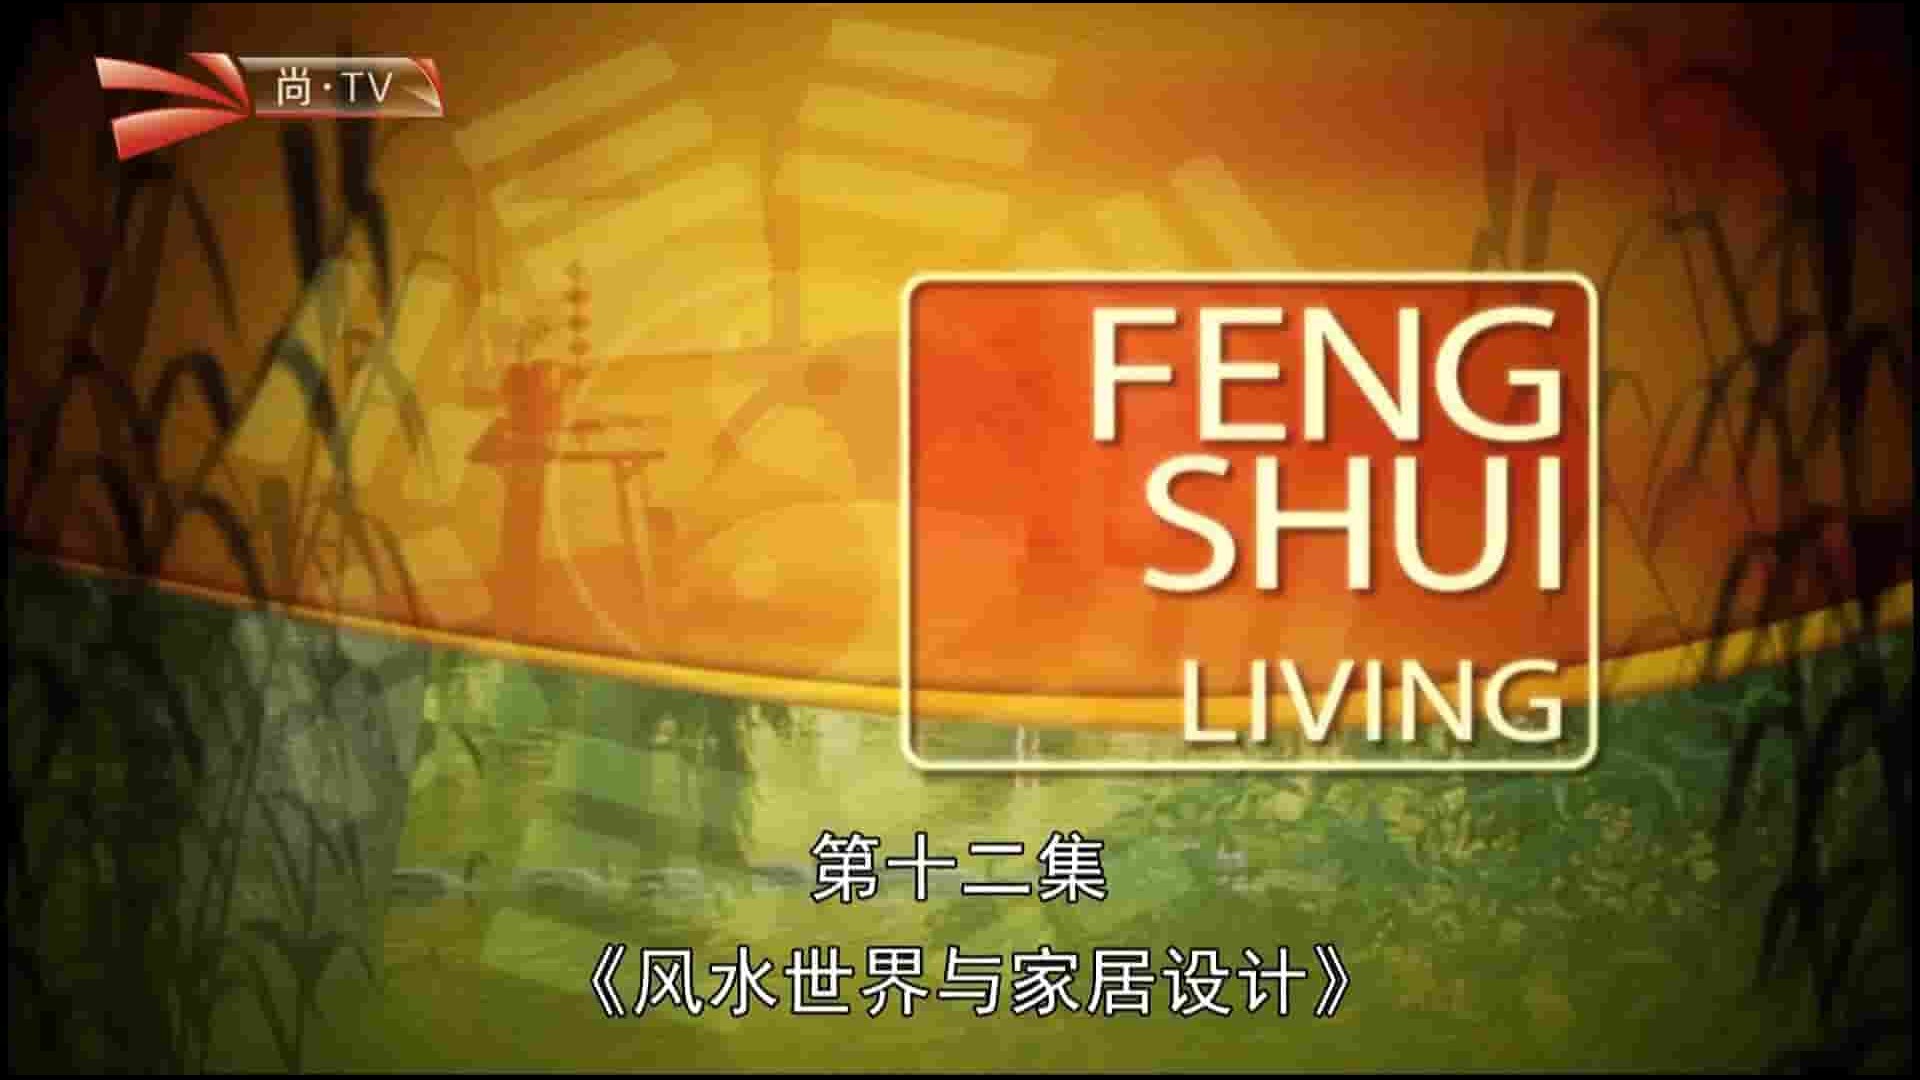 尚TV纪录片《风水世界与家居设计 FengShui Living 2016》全10集 英语中字 1080I高清网盘下载